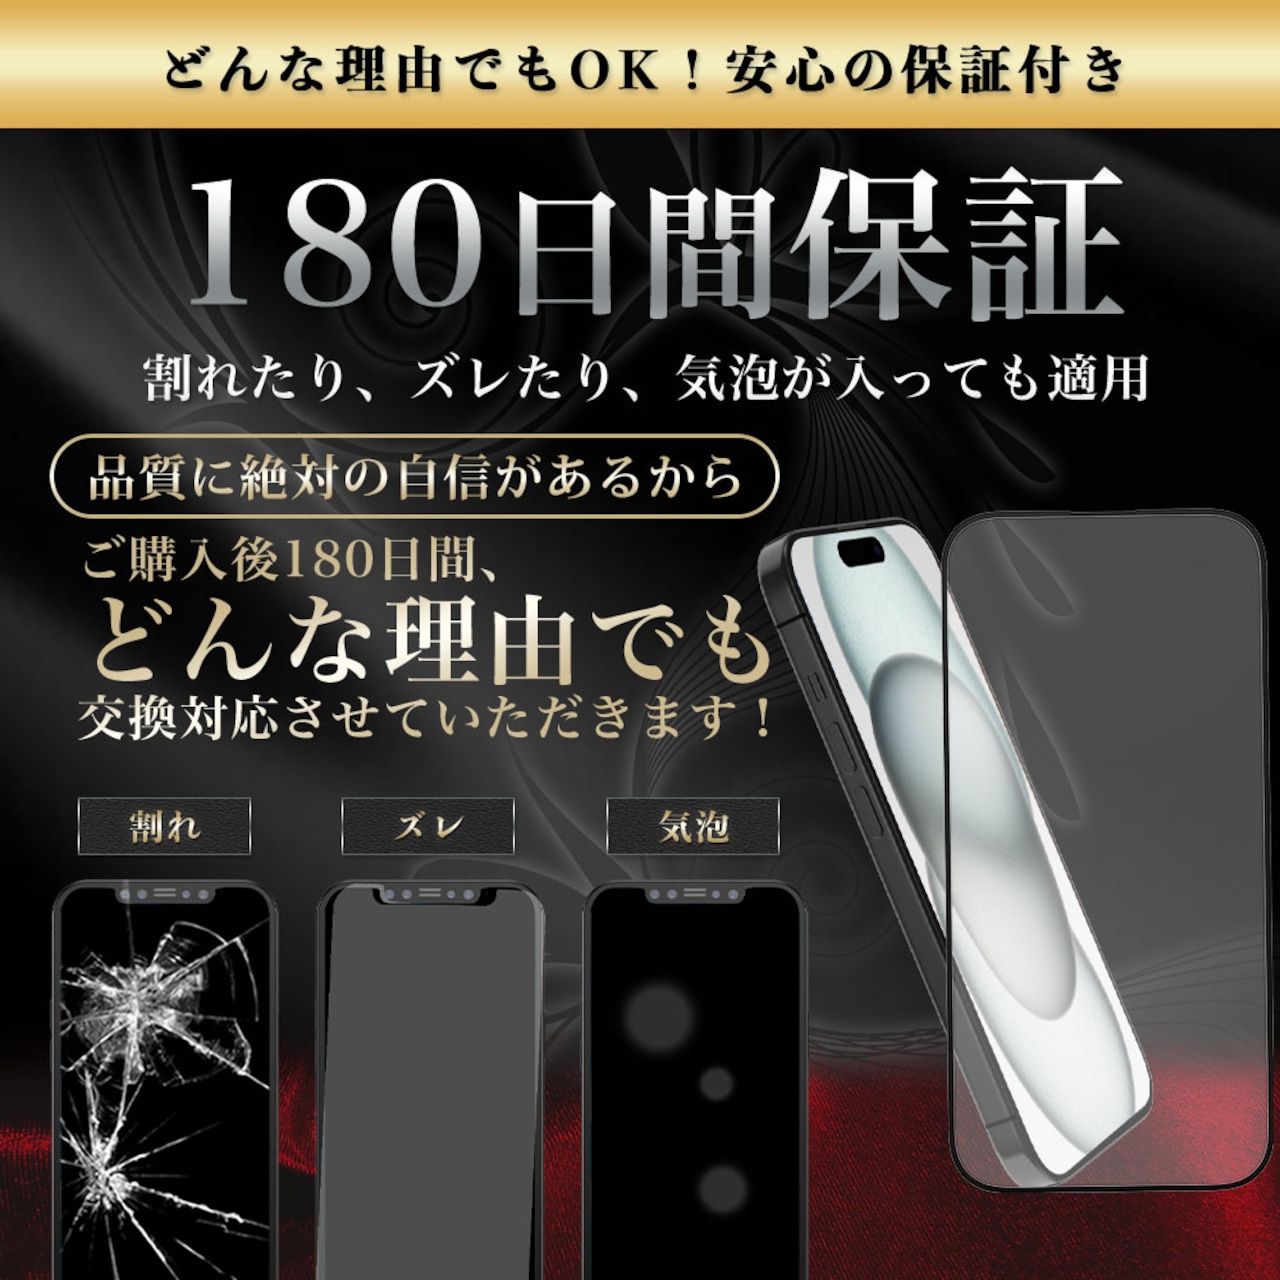 Hy+ iPhone15 Plus フィルム ガラスフィルム W硬化製法 一般ガラスの3倍強度 全面保護 全面吸着 日本産ガラス使用 厚み0.33mm ブラック